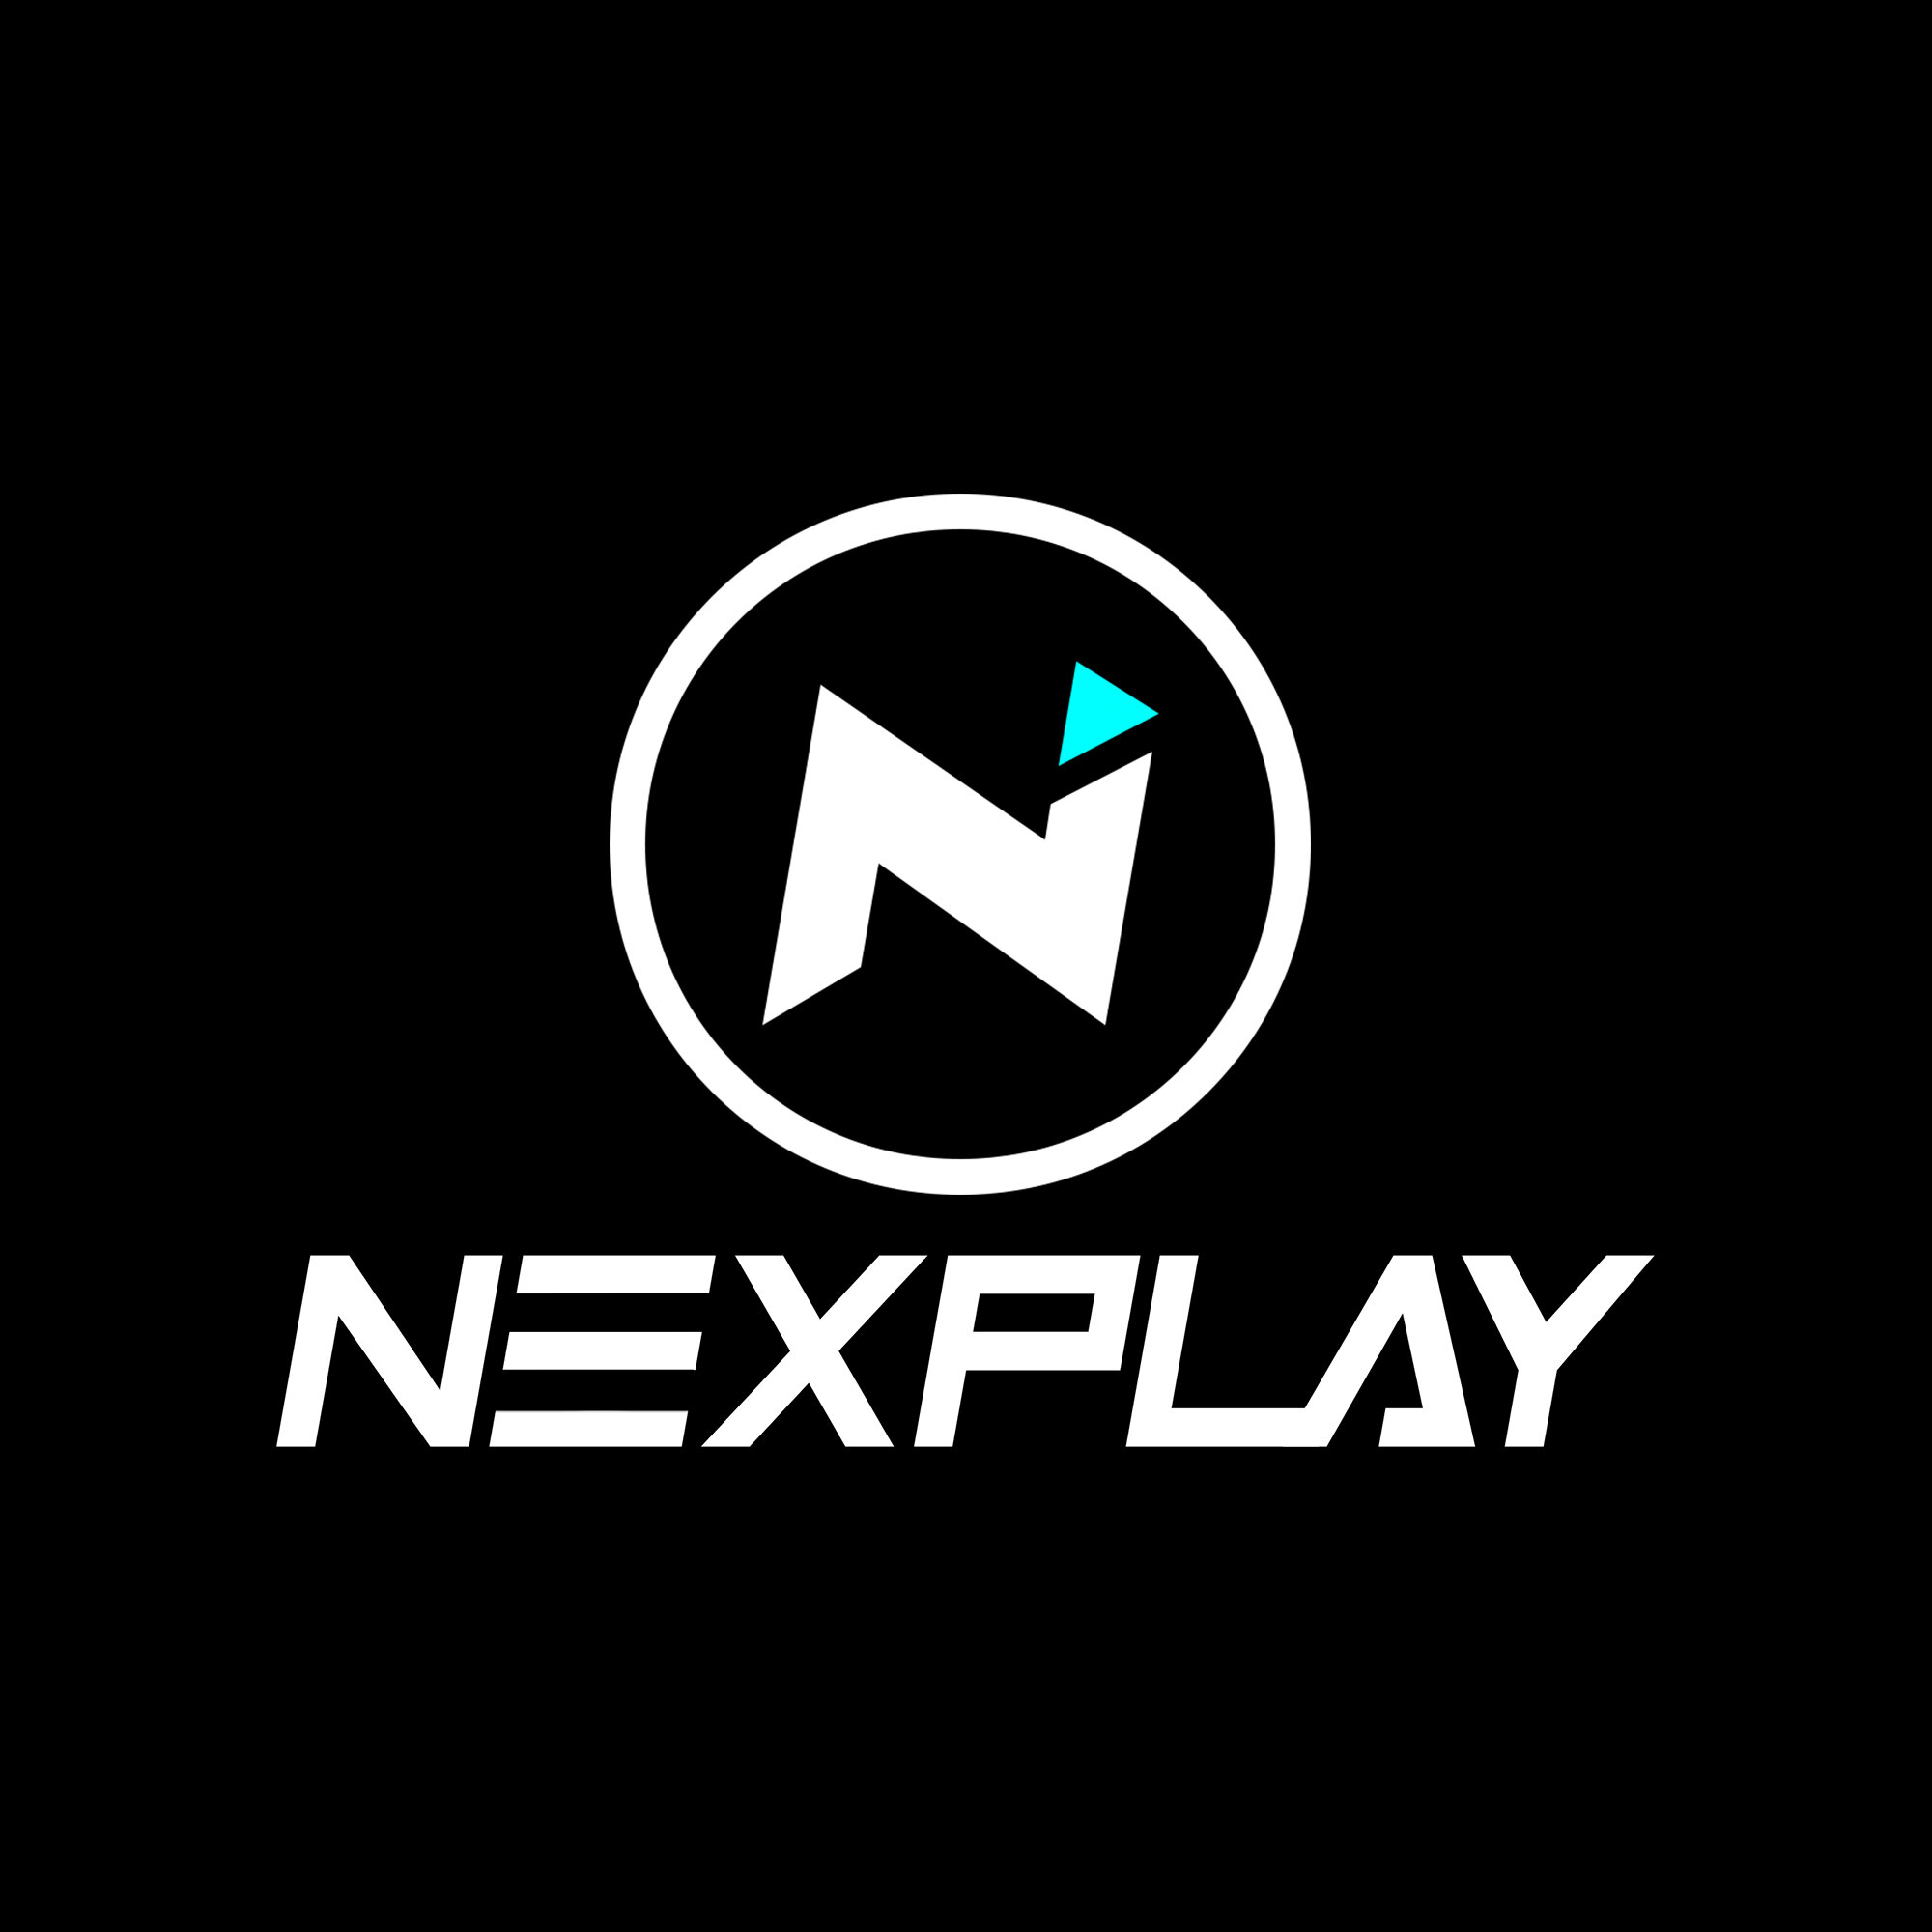 Nexplay-logo-square-black.jpg